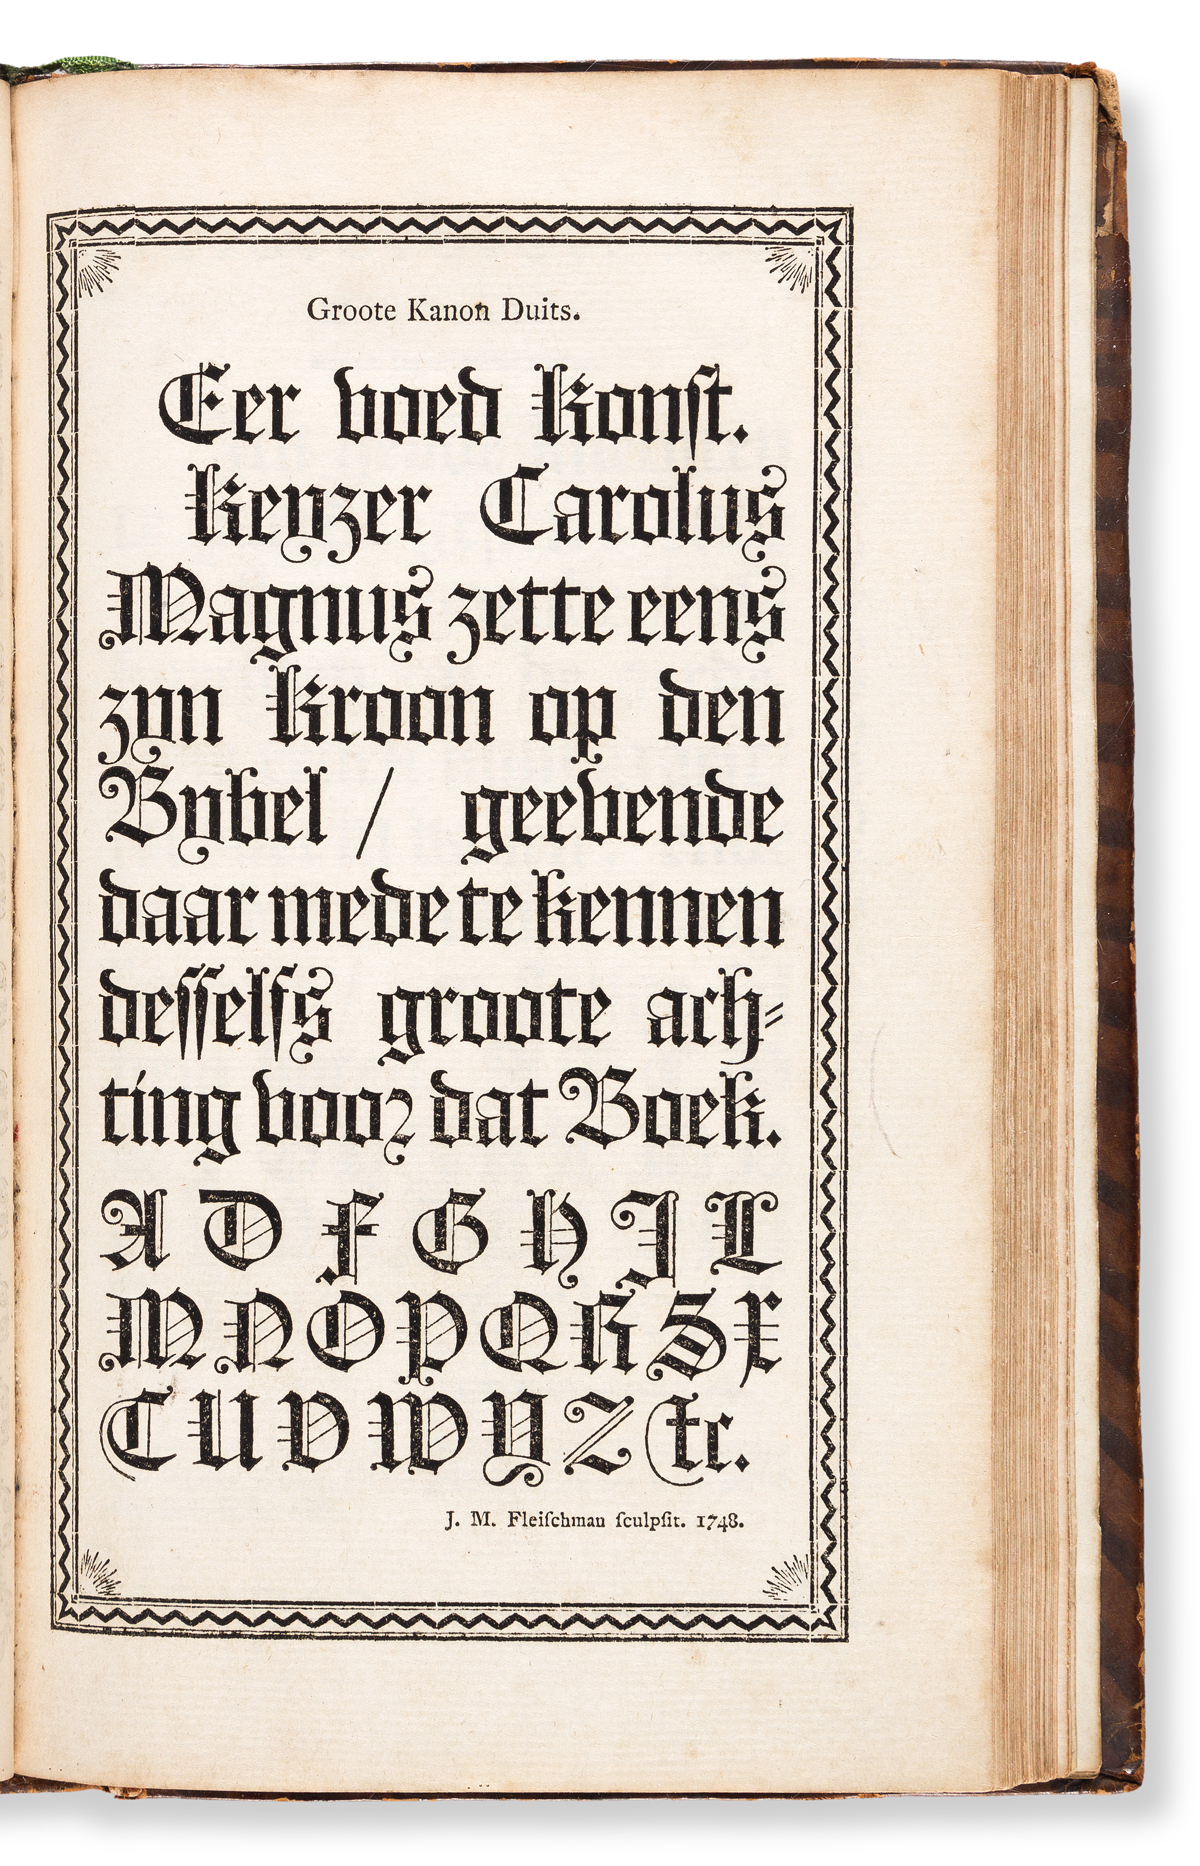 [SPECIMEN BOOK — ENSCHEDE, J., LETTERGIETERY]. Proef van Letteren, Welk gegooten worden in de Nieuwe Haerlemsche Lettergietery. [Presu